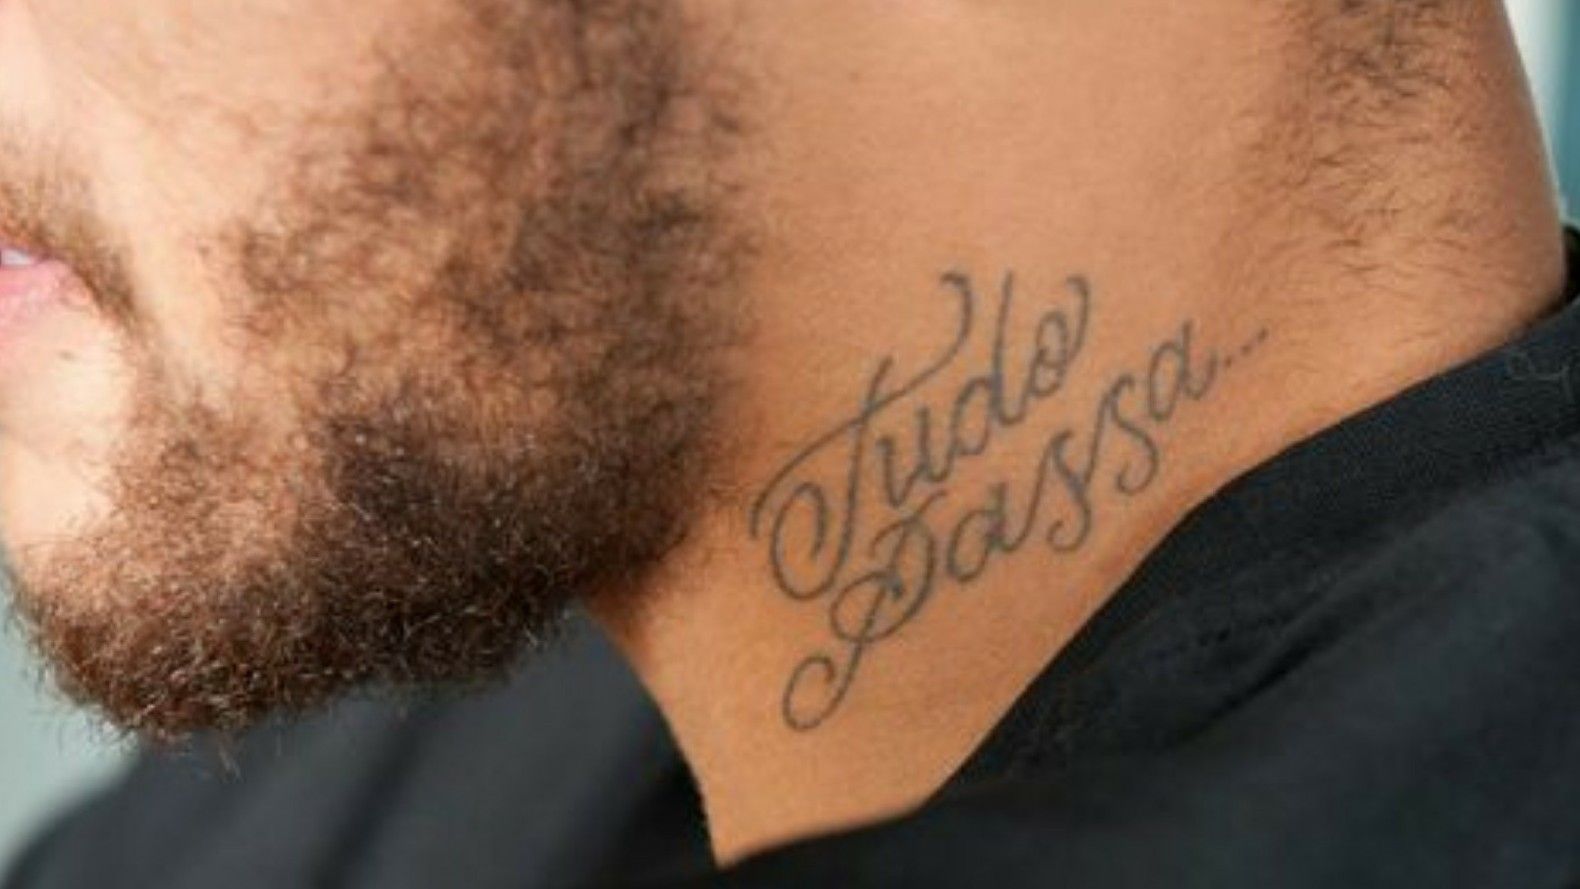 Celebritattoo  Neymar  Neymars Tudo Passa tattoo on the neck